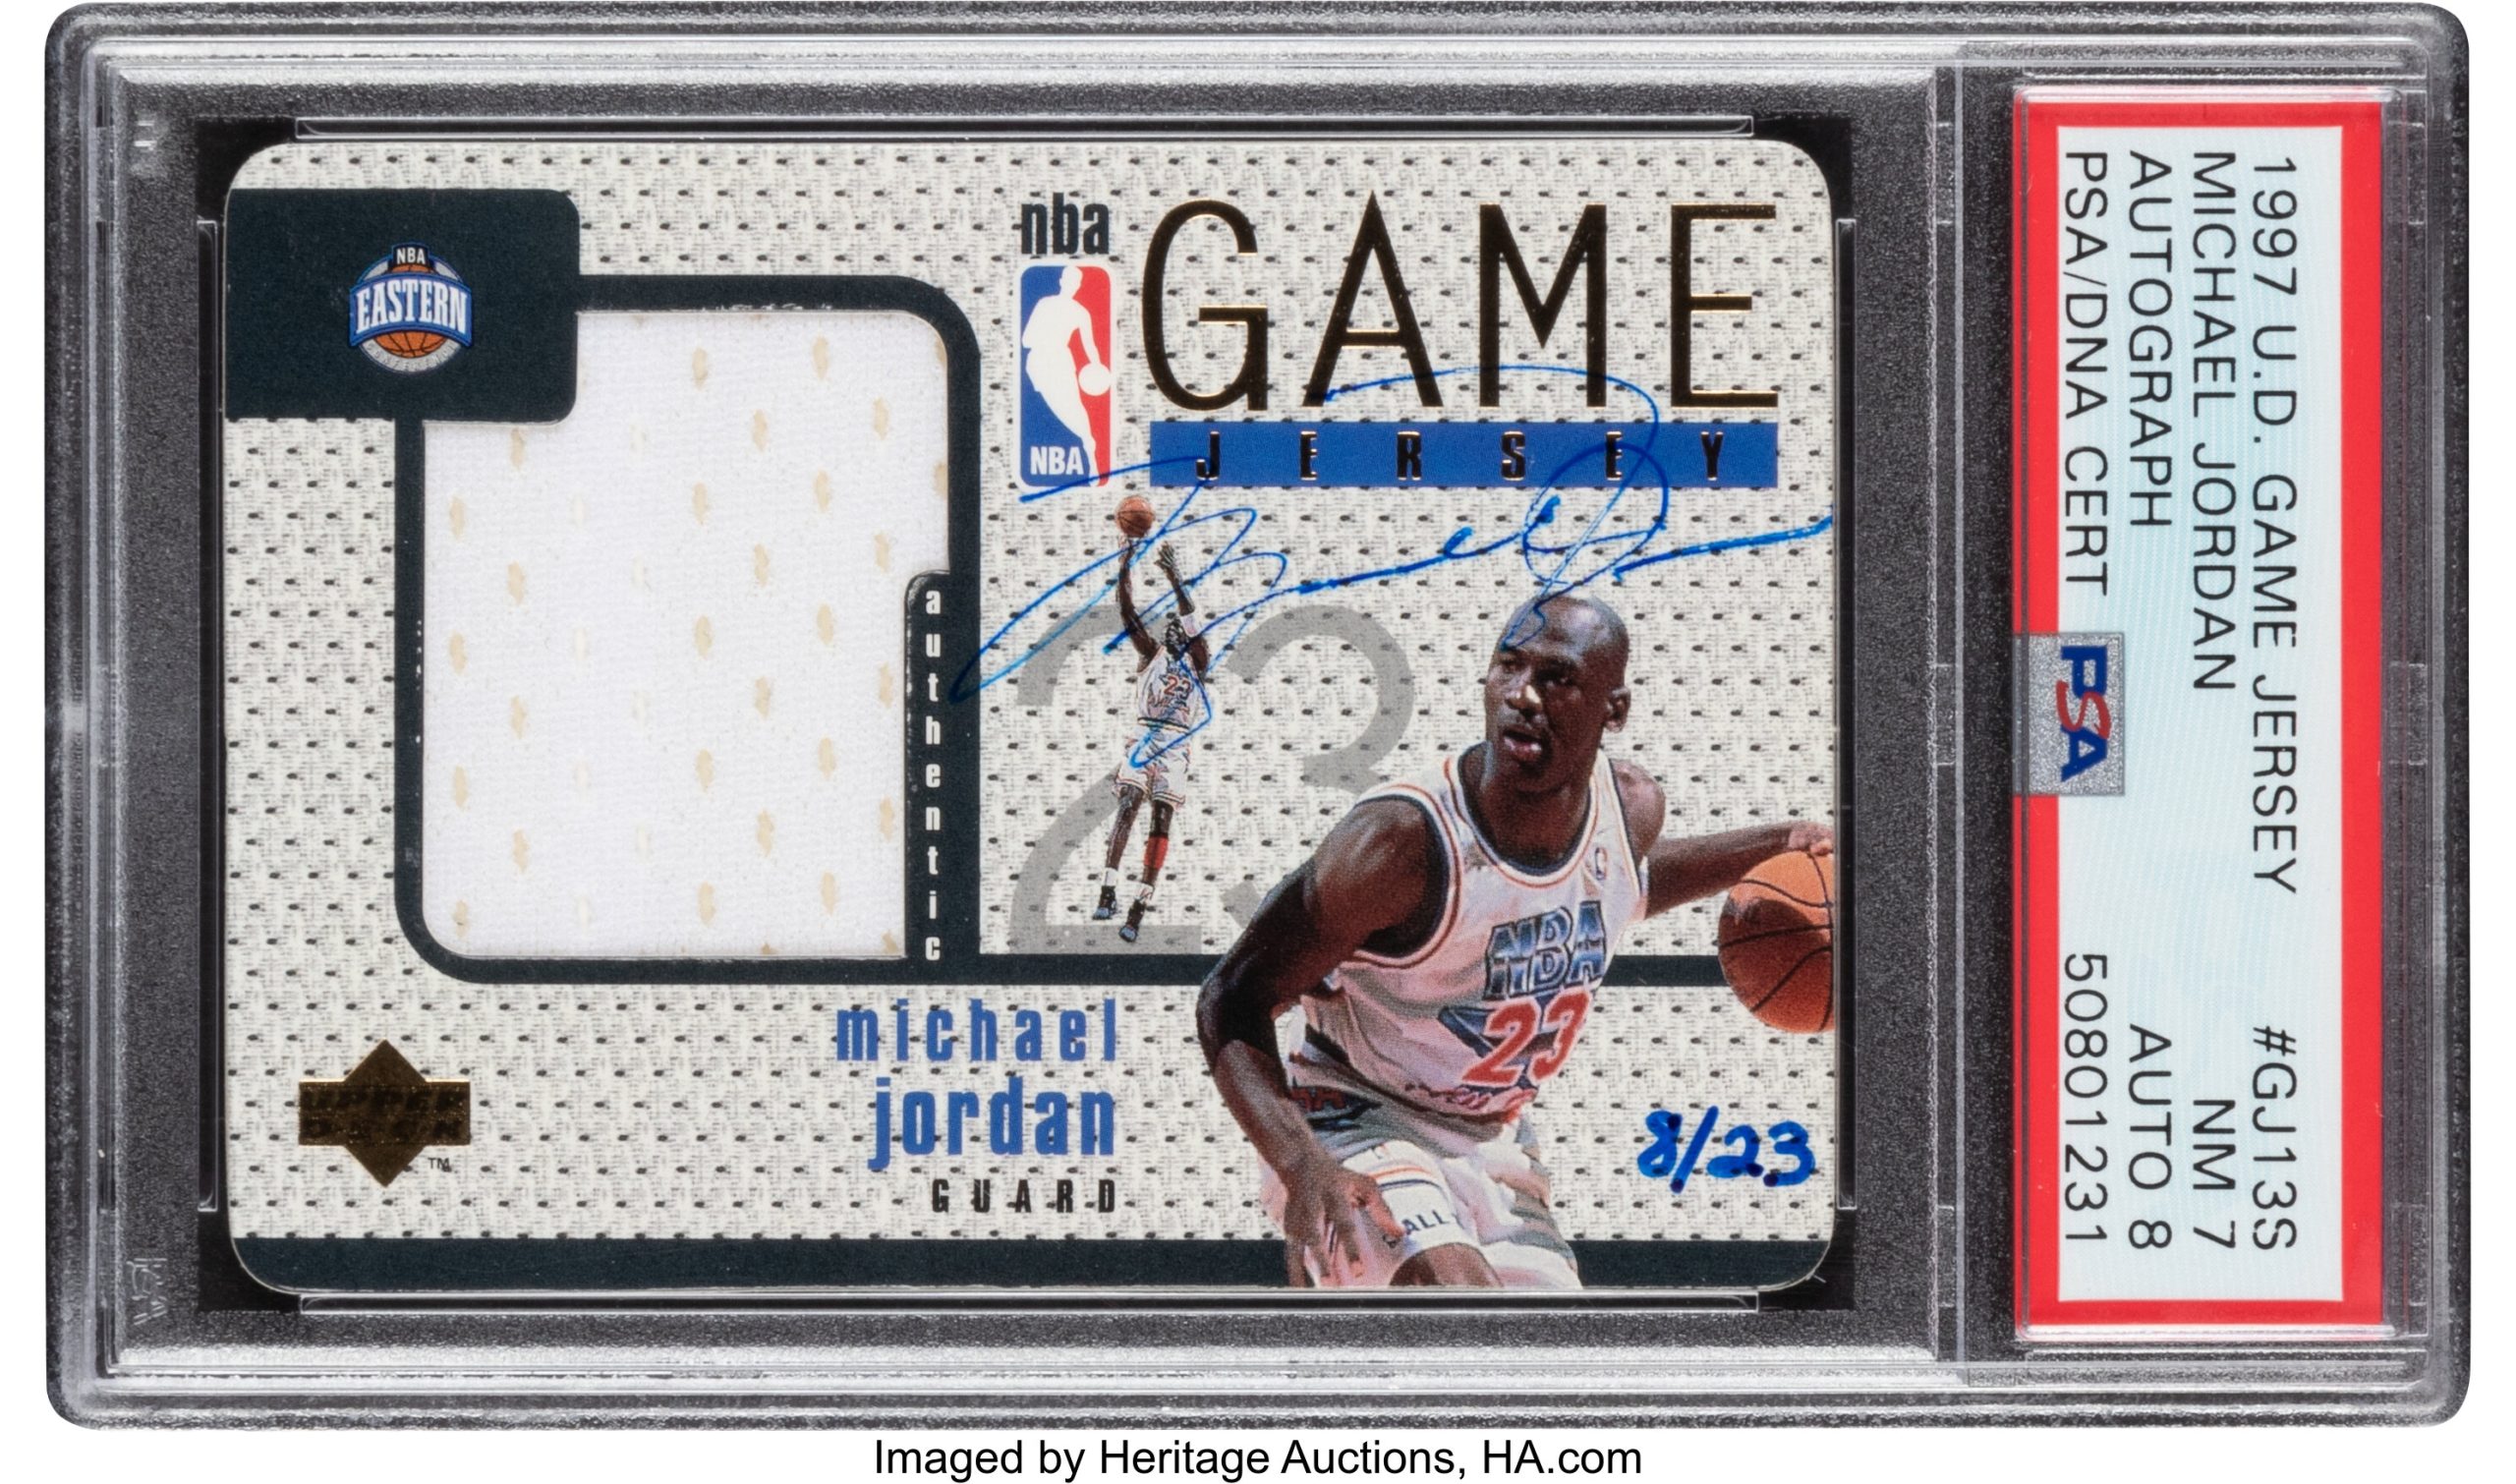 1997 Upper Deck Game Jersey Autograph - Michael Jordan